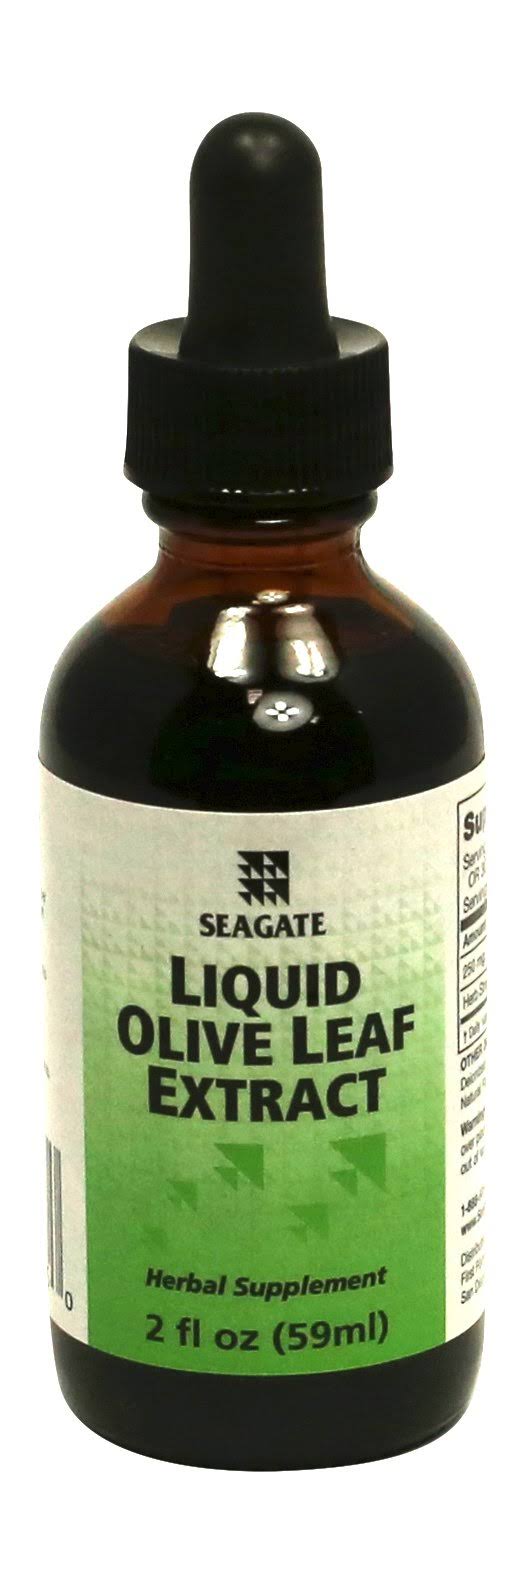 Seagate Liquid Olive Leaf Extract - 2oz